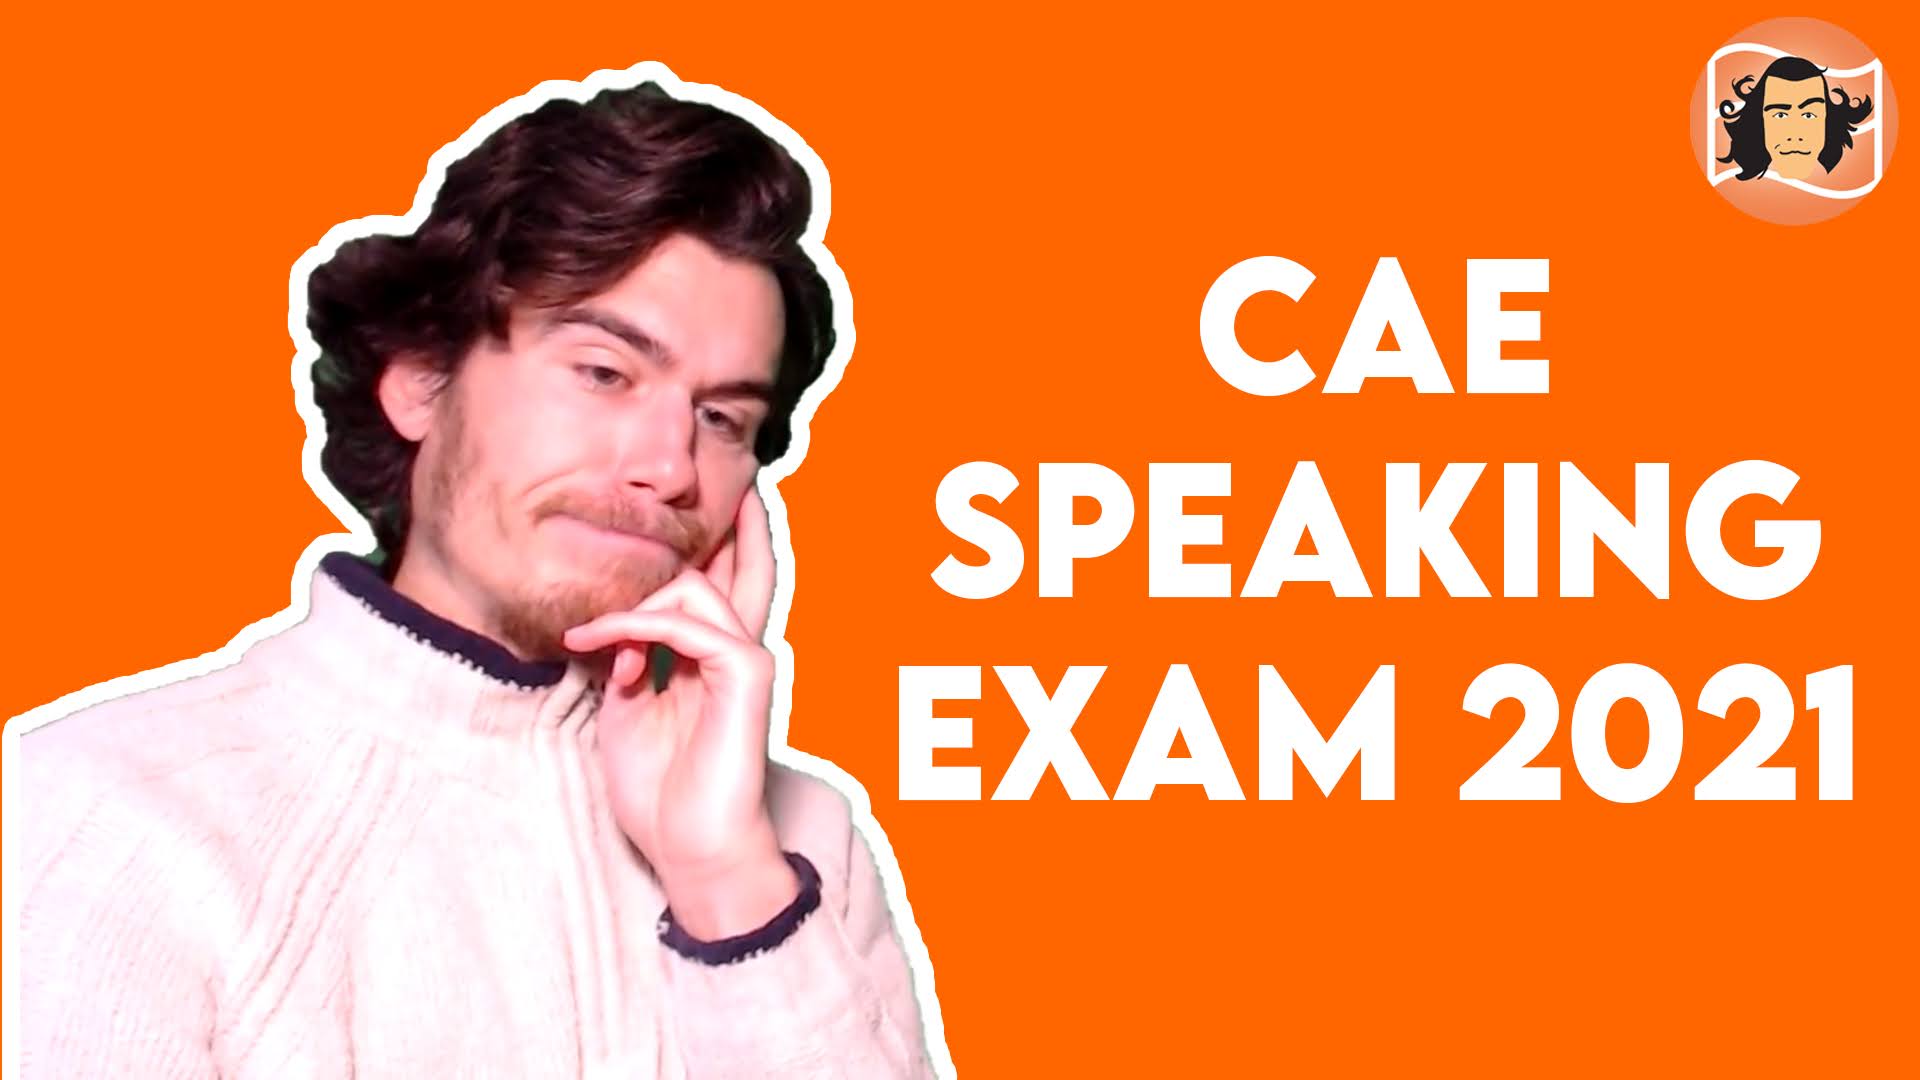 cae speaking exam format